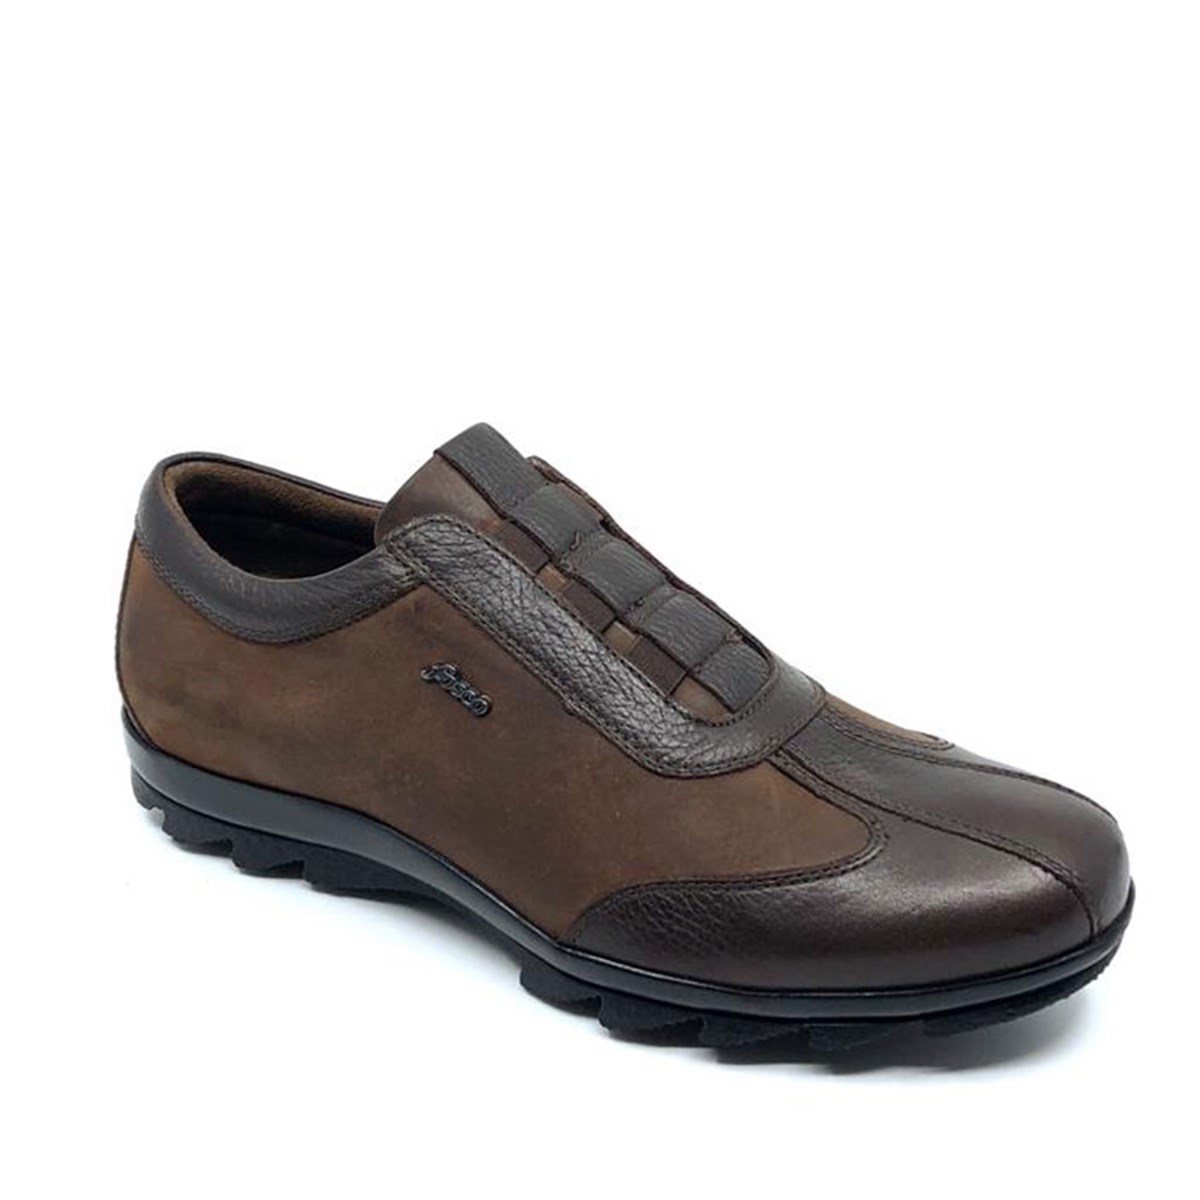 Erkek Kahverengi Bağcıksız Sıcak Astar Kışlık Günlük Ayakkabı, Renk: Kahverengi, Beden: 40